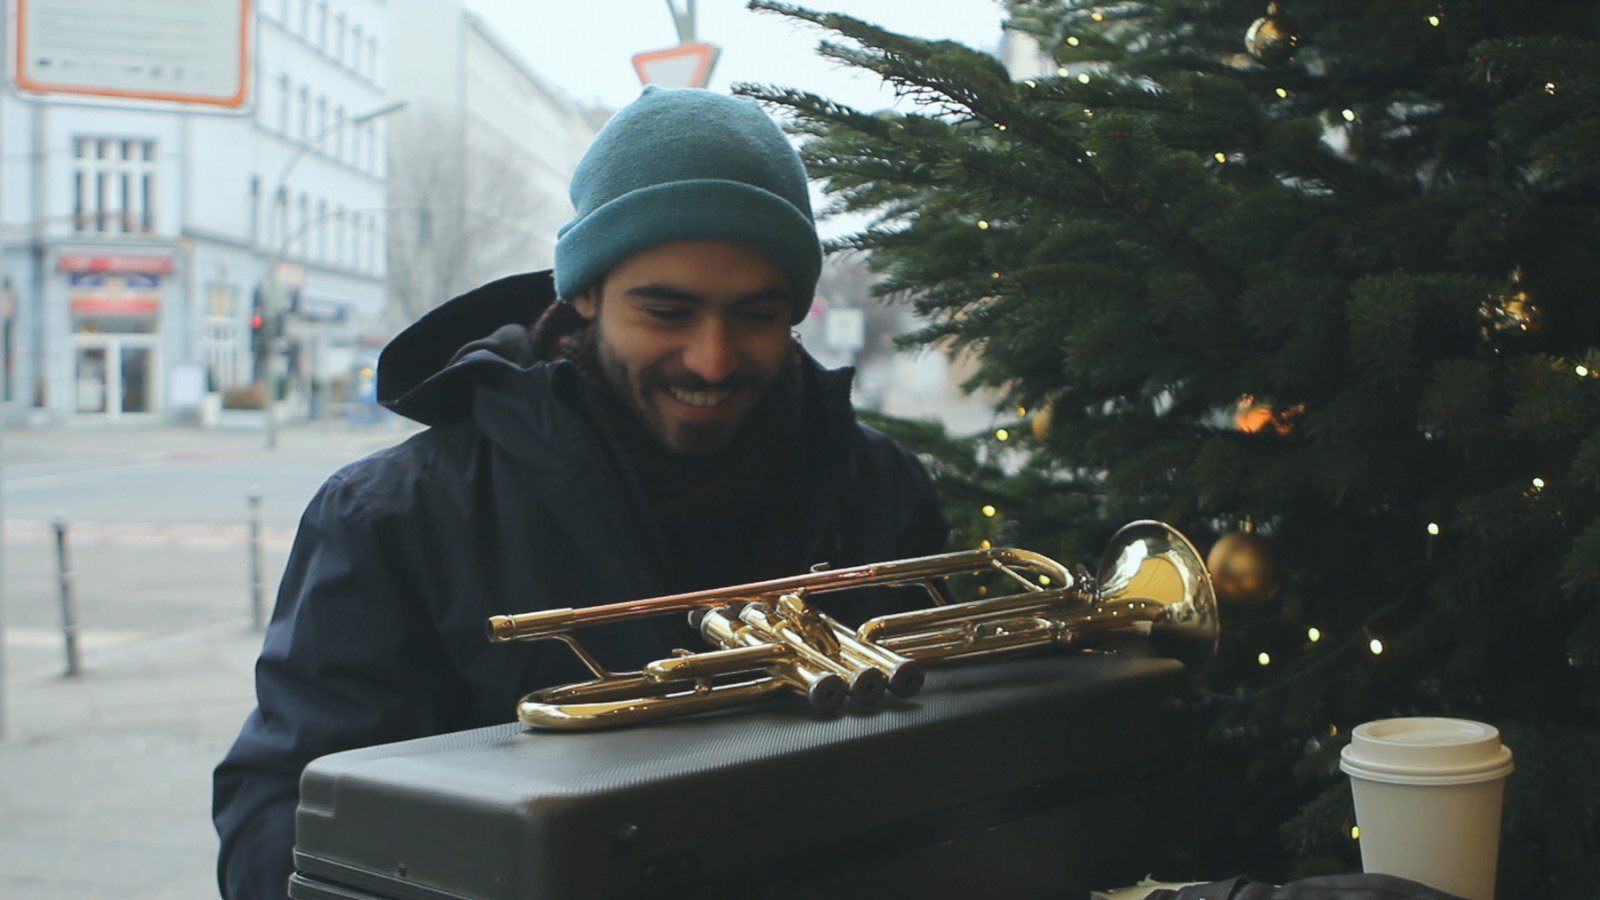 Un homme en terrasse d'un café berlinois en plein hiver, à côté d'un sapin de Noël. L'homme est vêtu d'un bonnet et sourit en découvrant sa trompette après l'avoir sortie de son étui.